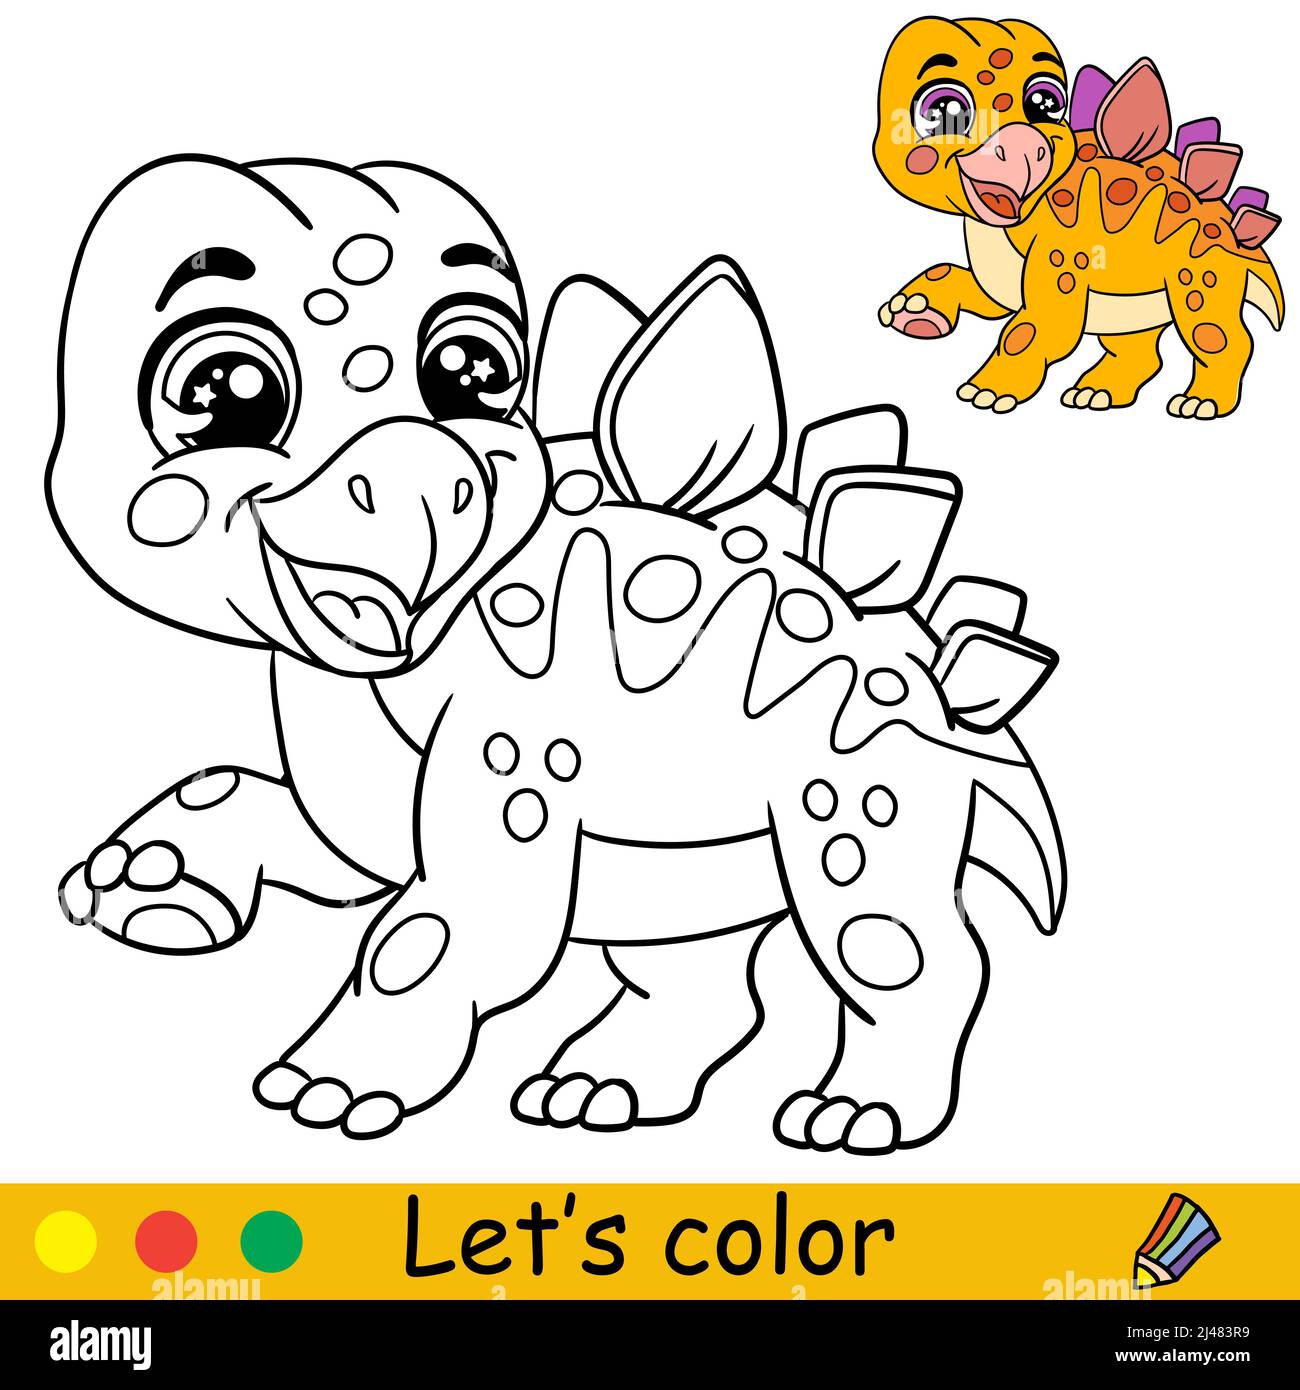 Dessin animé dinosaure stegosaurus mignon. Page de livre de coloriage avec modèle coloré pour les enfants. Illustration vectorielle isolée. Pour livre de coloriage, impression, jeu, p Illustration de Vecteur